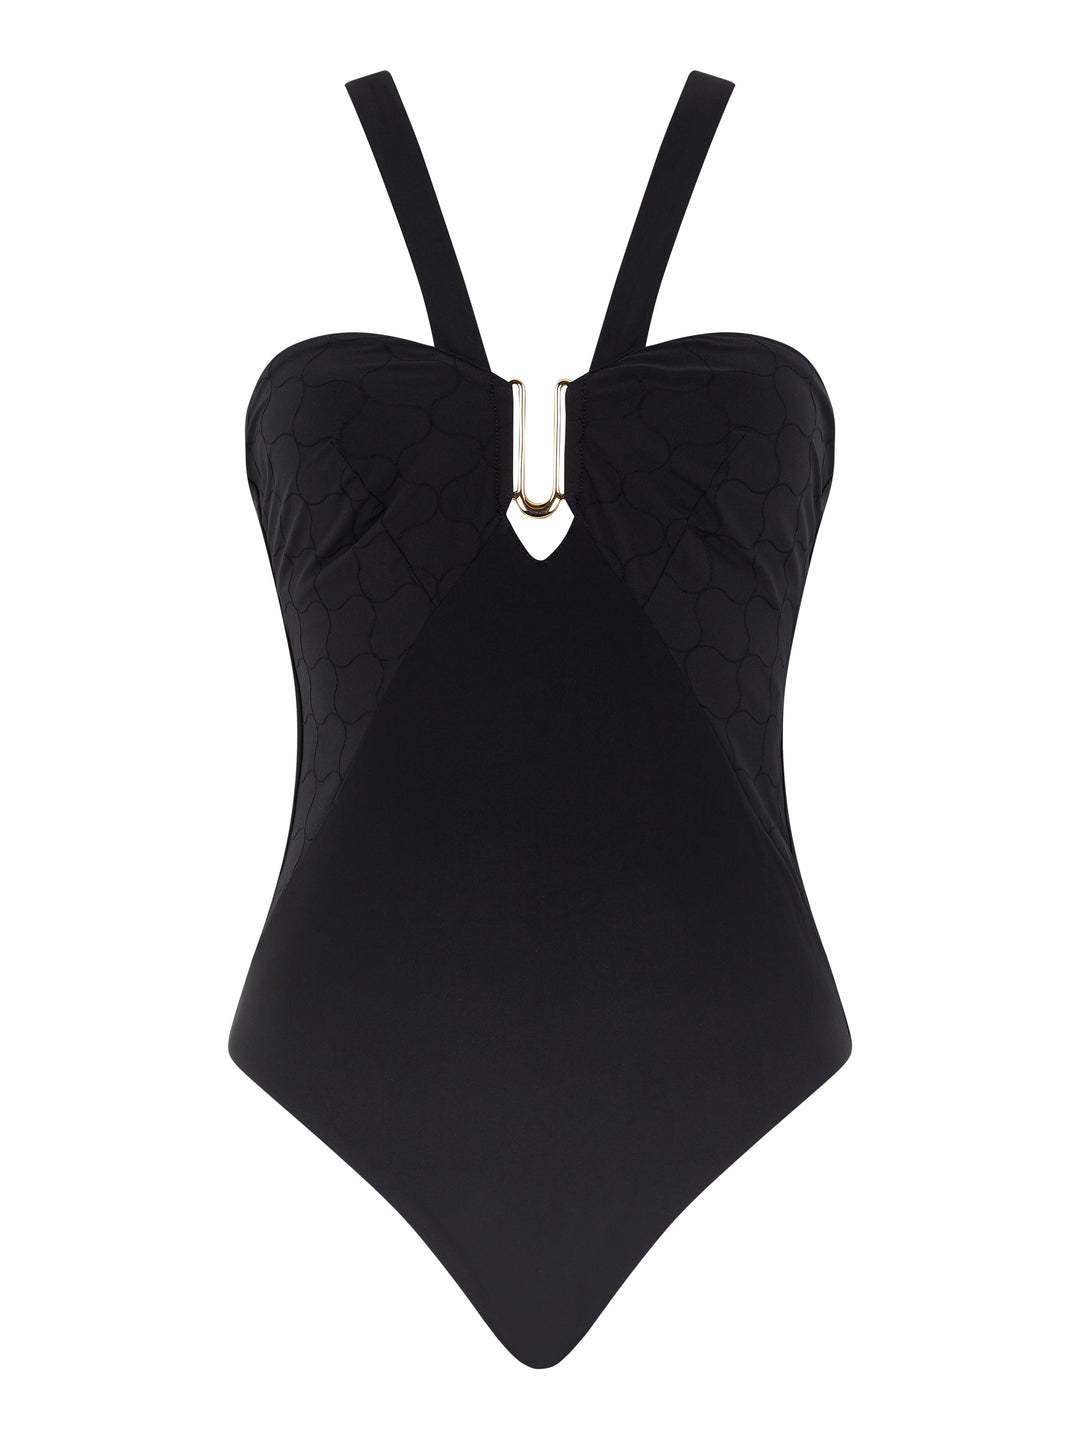 Chantelle Swimwear - Glow Wirefree Swimsuit Black Unwired Swimsuit Chantelle Swimwear 